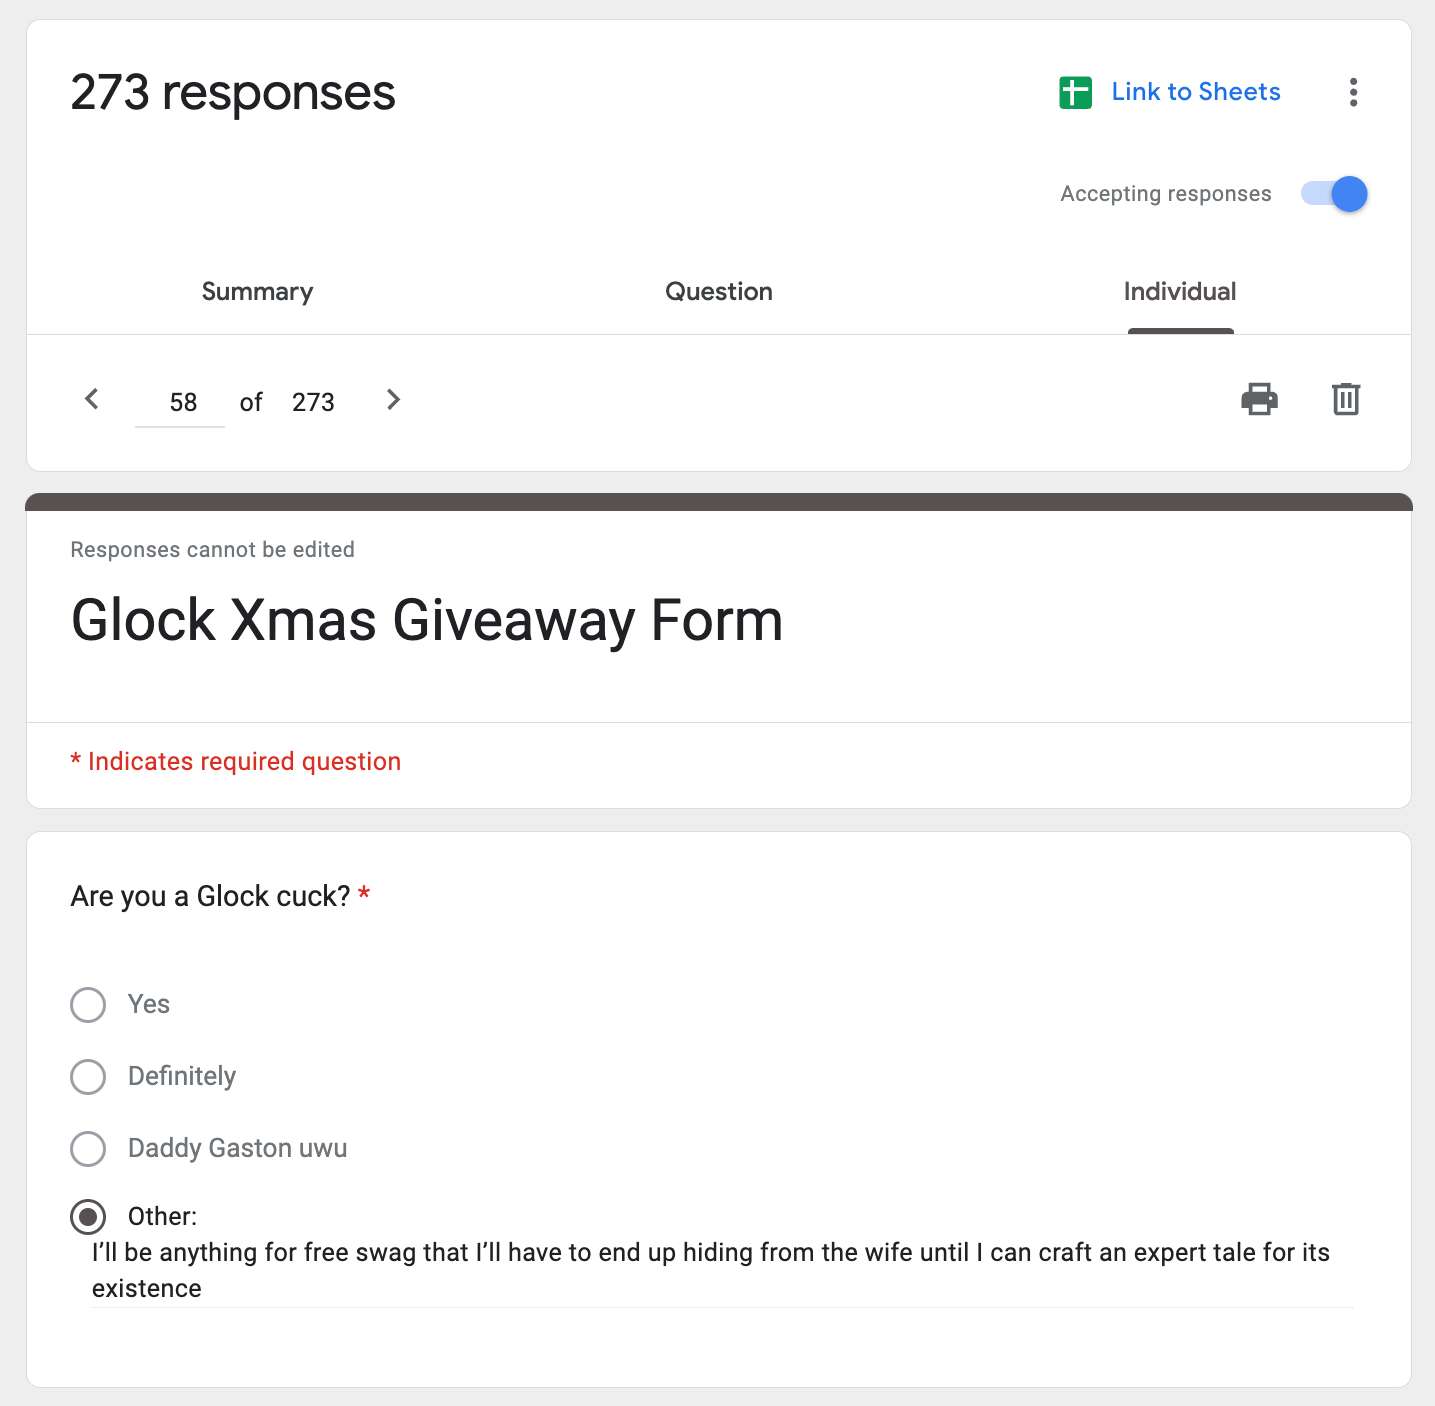 Glock Christmas Giveaway Winner IS...